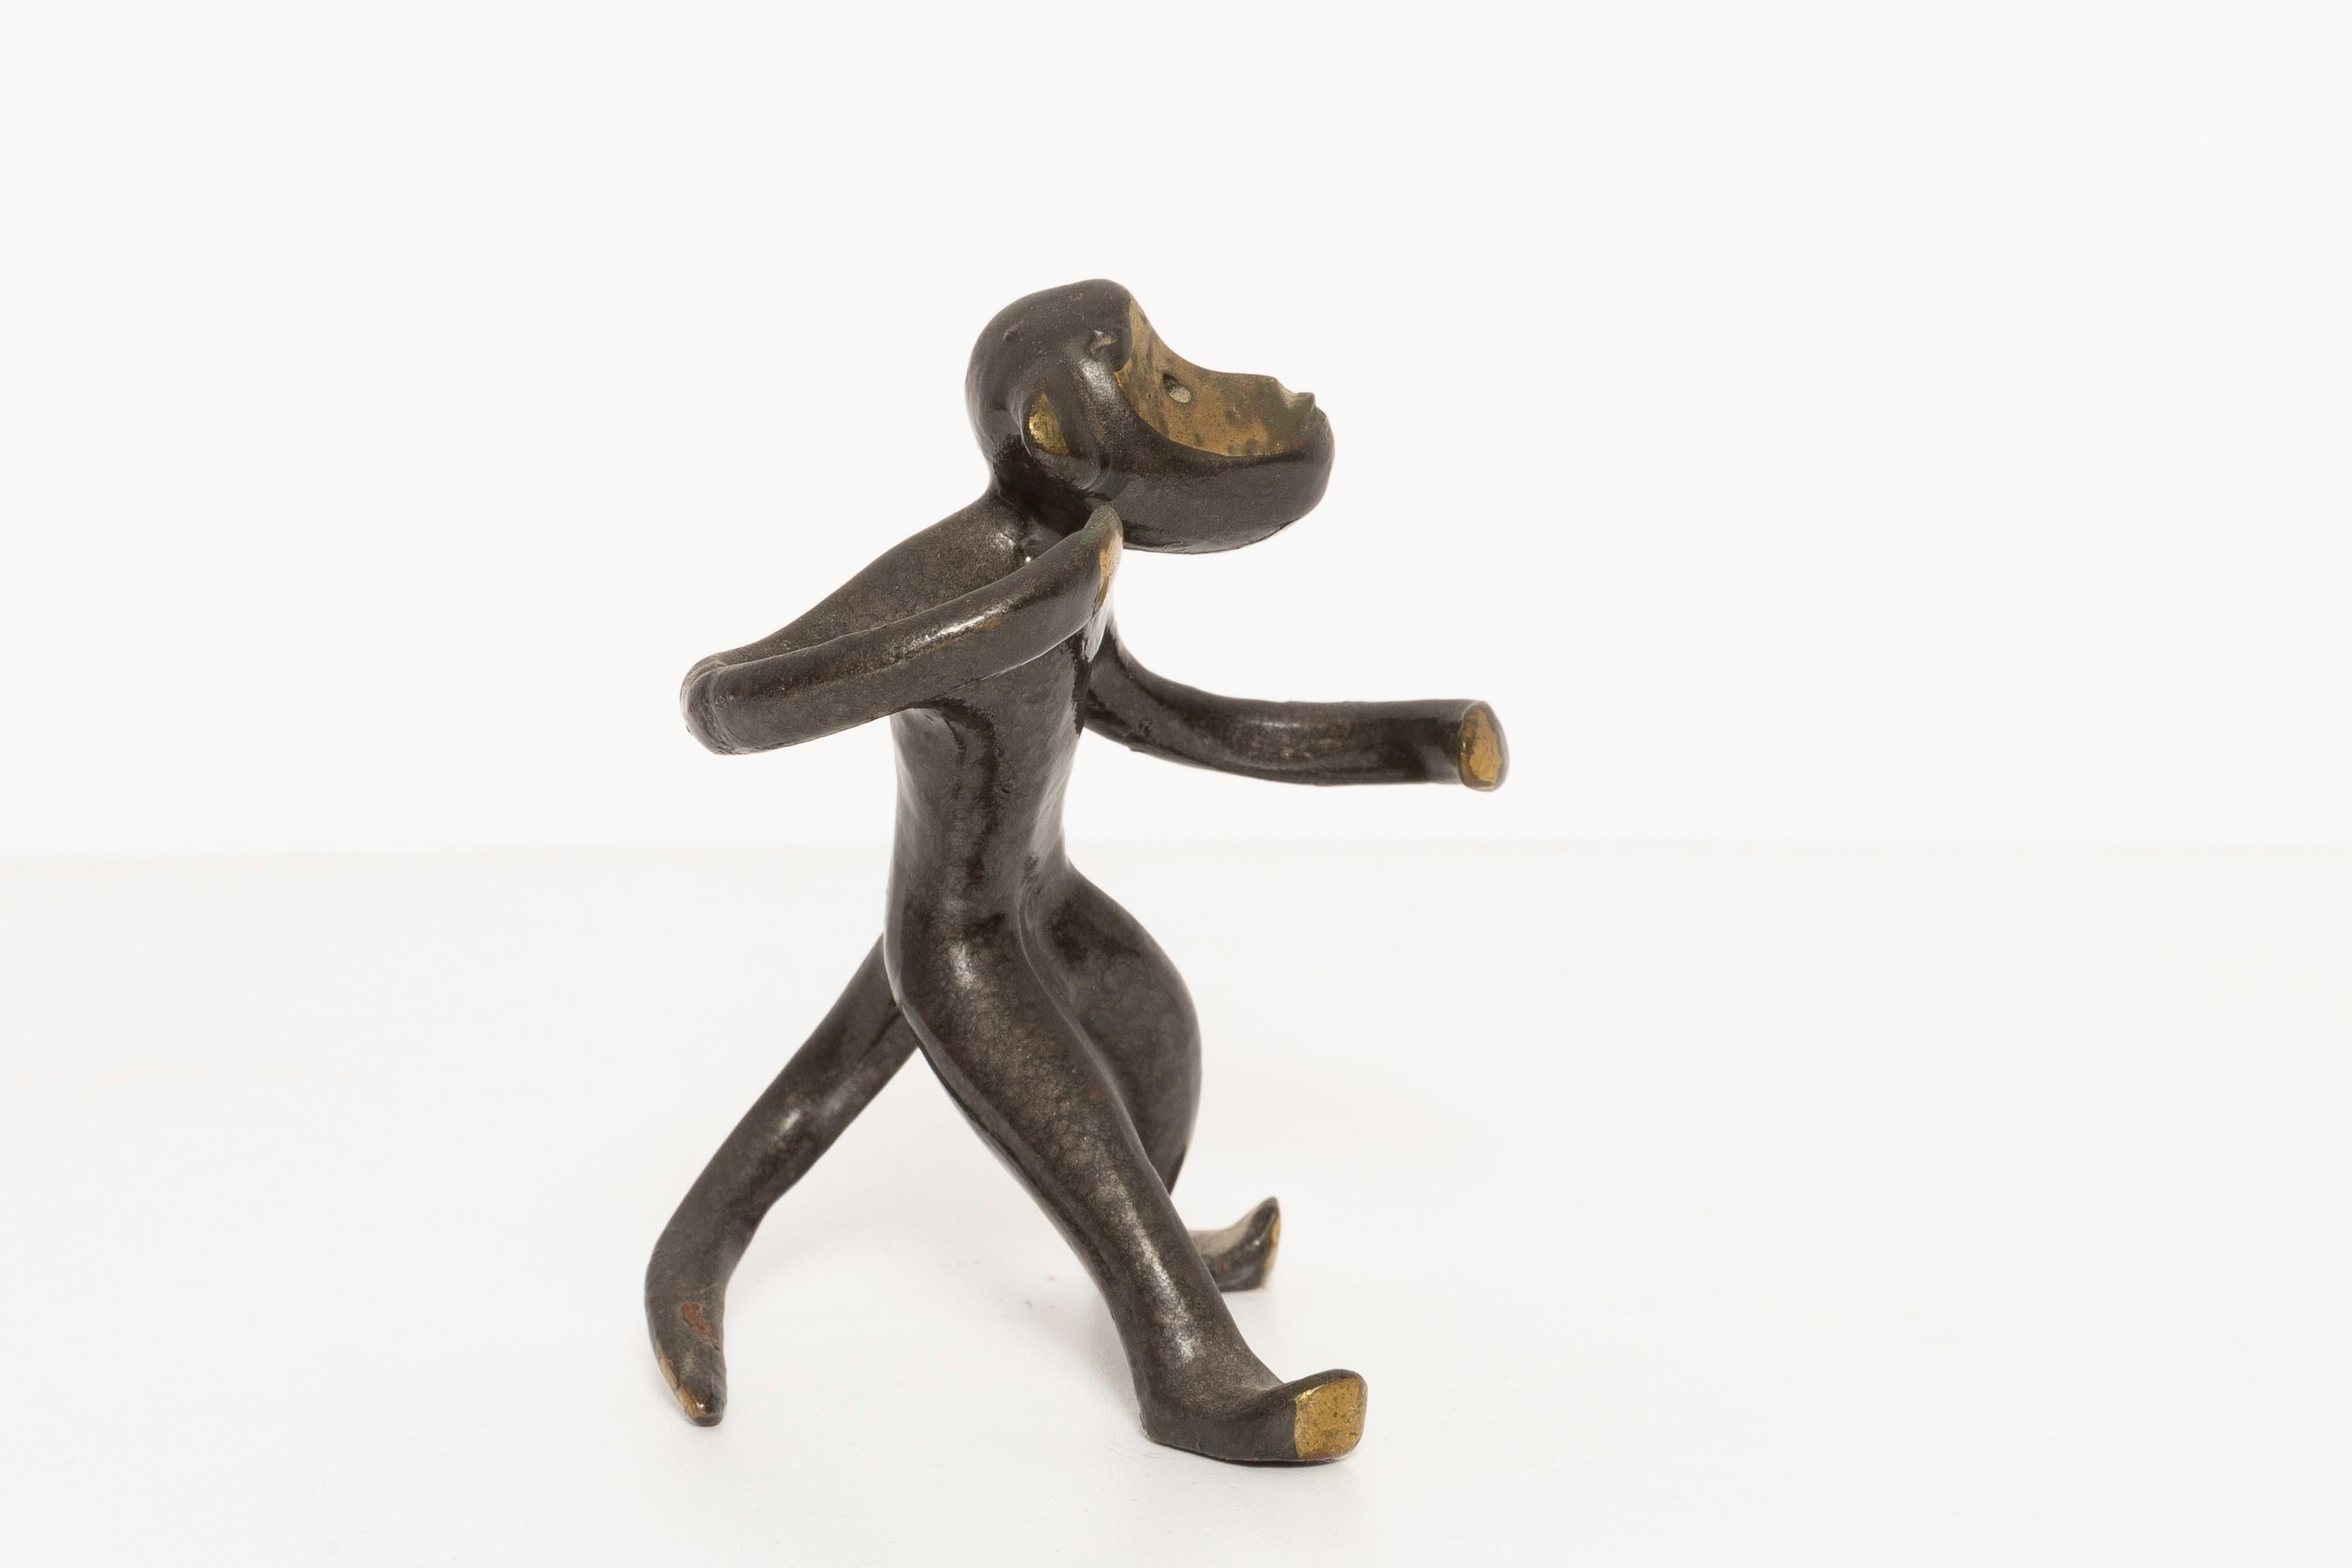 Austrian Monkey Figurine by Walter Bosse, Europe, 1950s